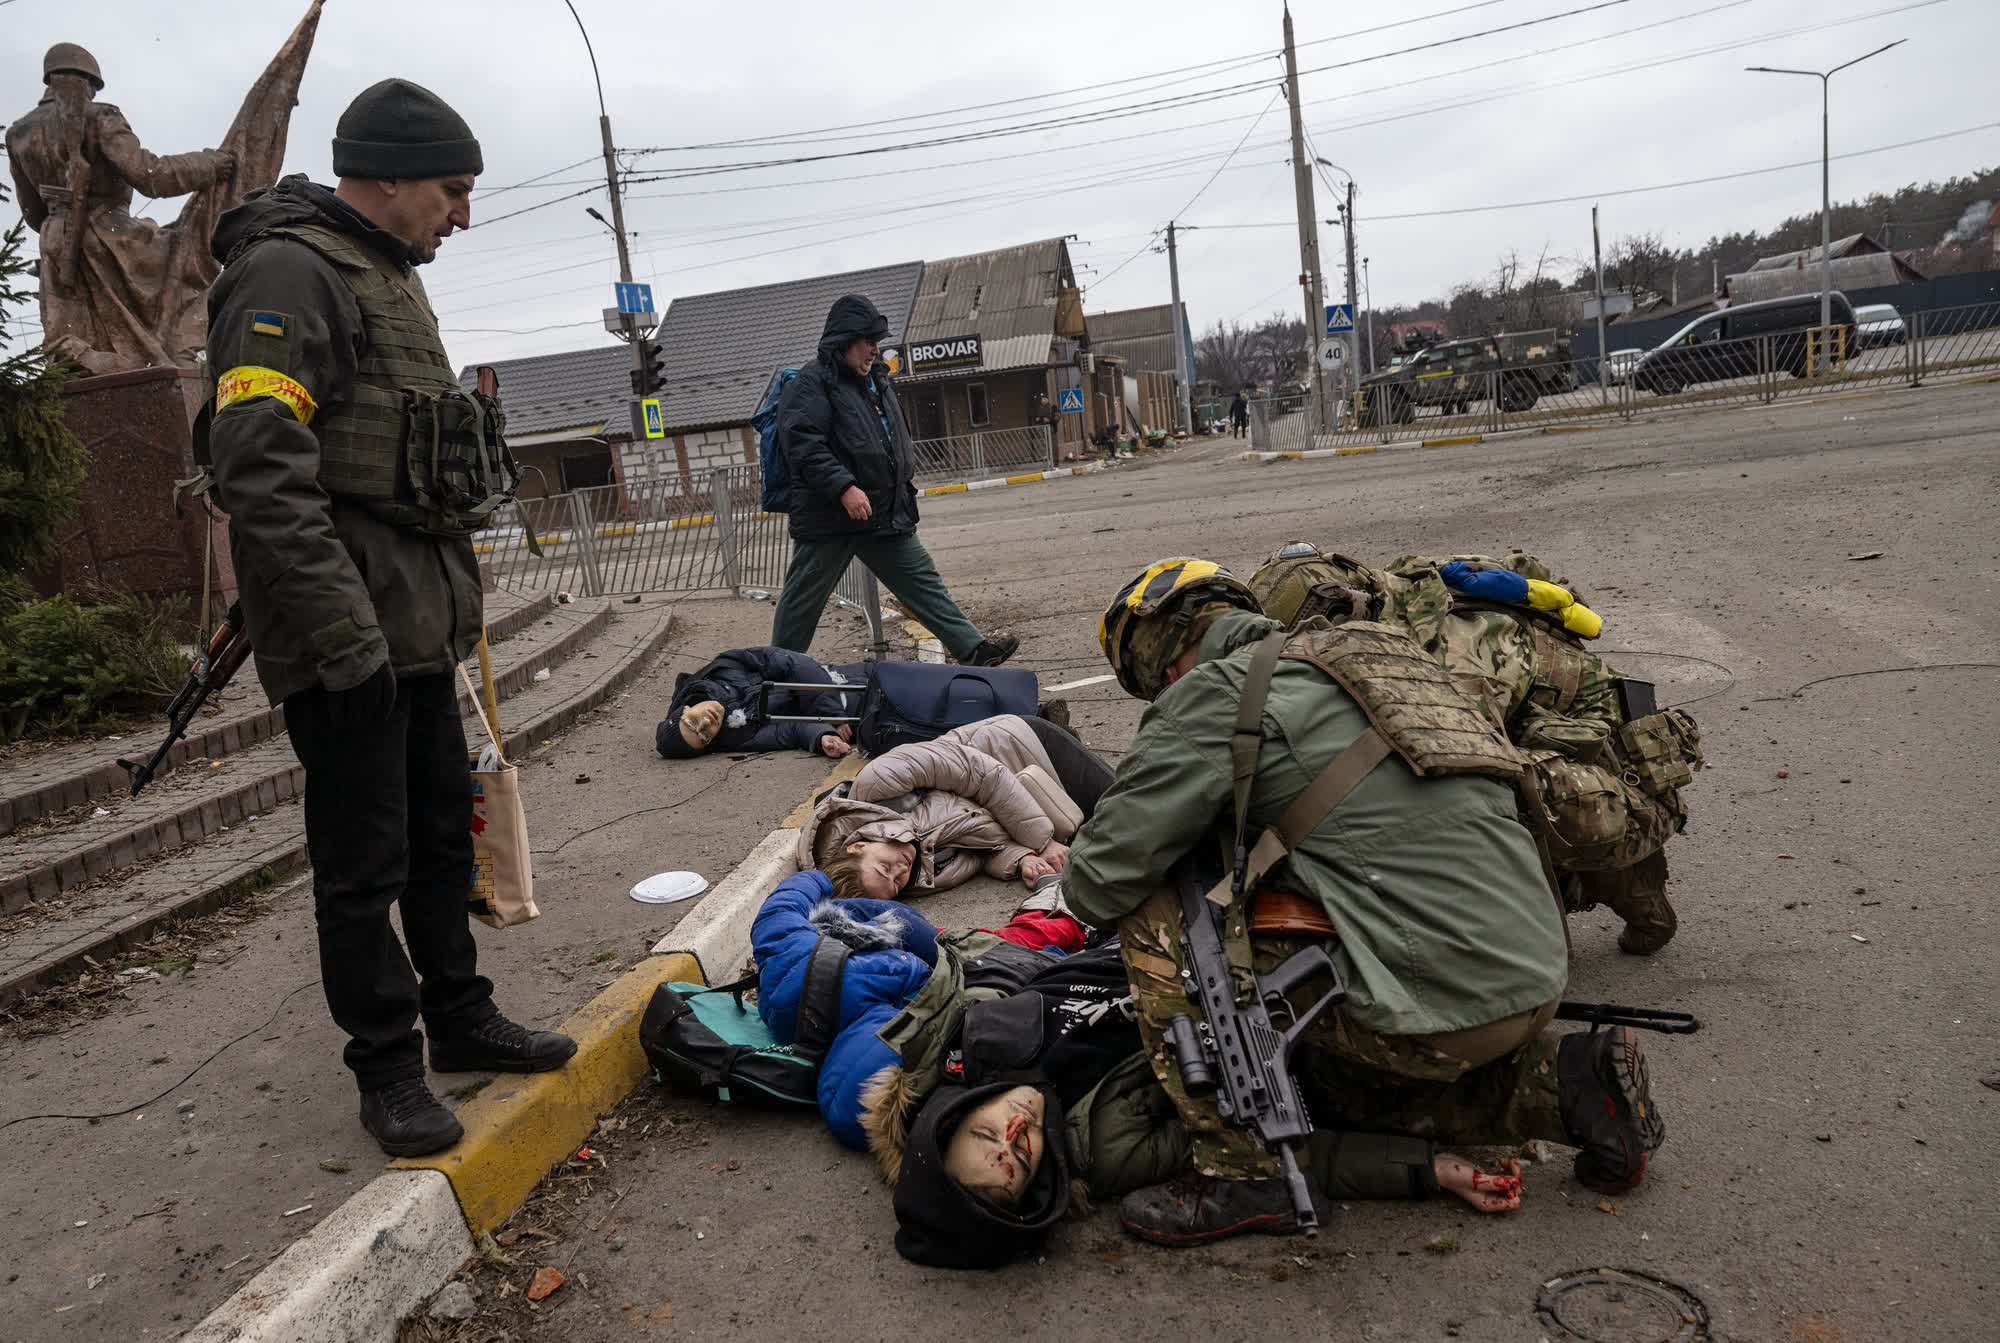 Tetiana Perbyinis y sus dos hijos yacen muertos tras ser alcanzados por un misil mientras un soldado trata de ayudar a otra persona que resultó herida en un ataque en la localidad de Irpin. (Linsey Addario/Reuters)